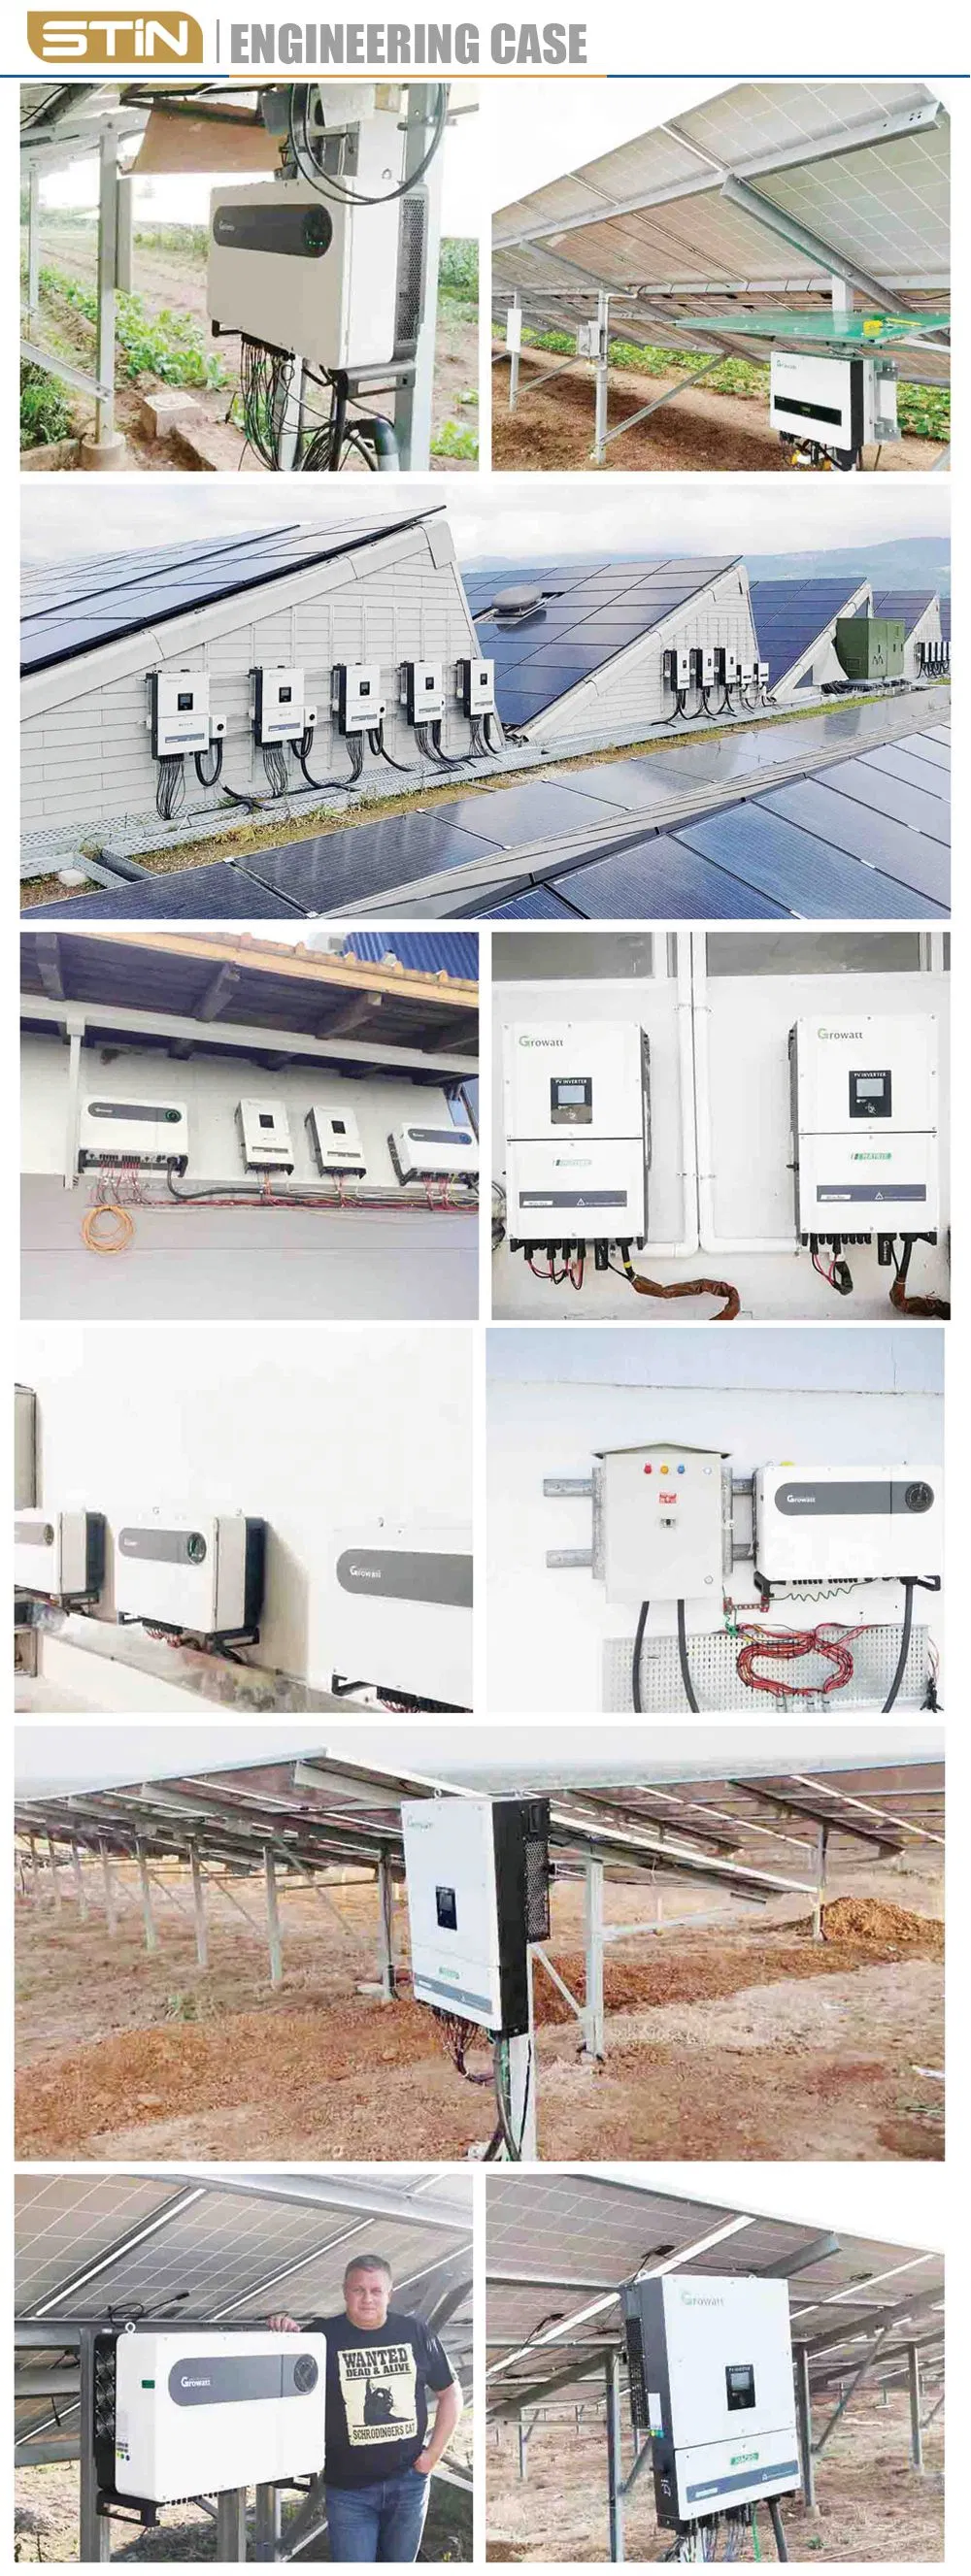 Power Plant 3kw 5kw 10kw 20kw 30kw on Grid Solar System 5kw Solar Panel System for Home Power Solar System Use